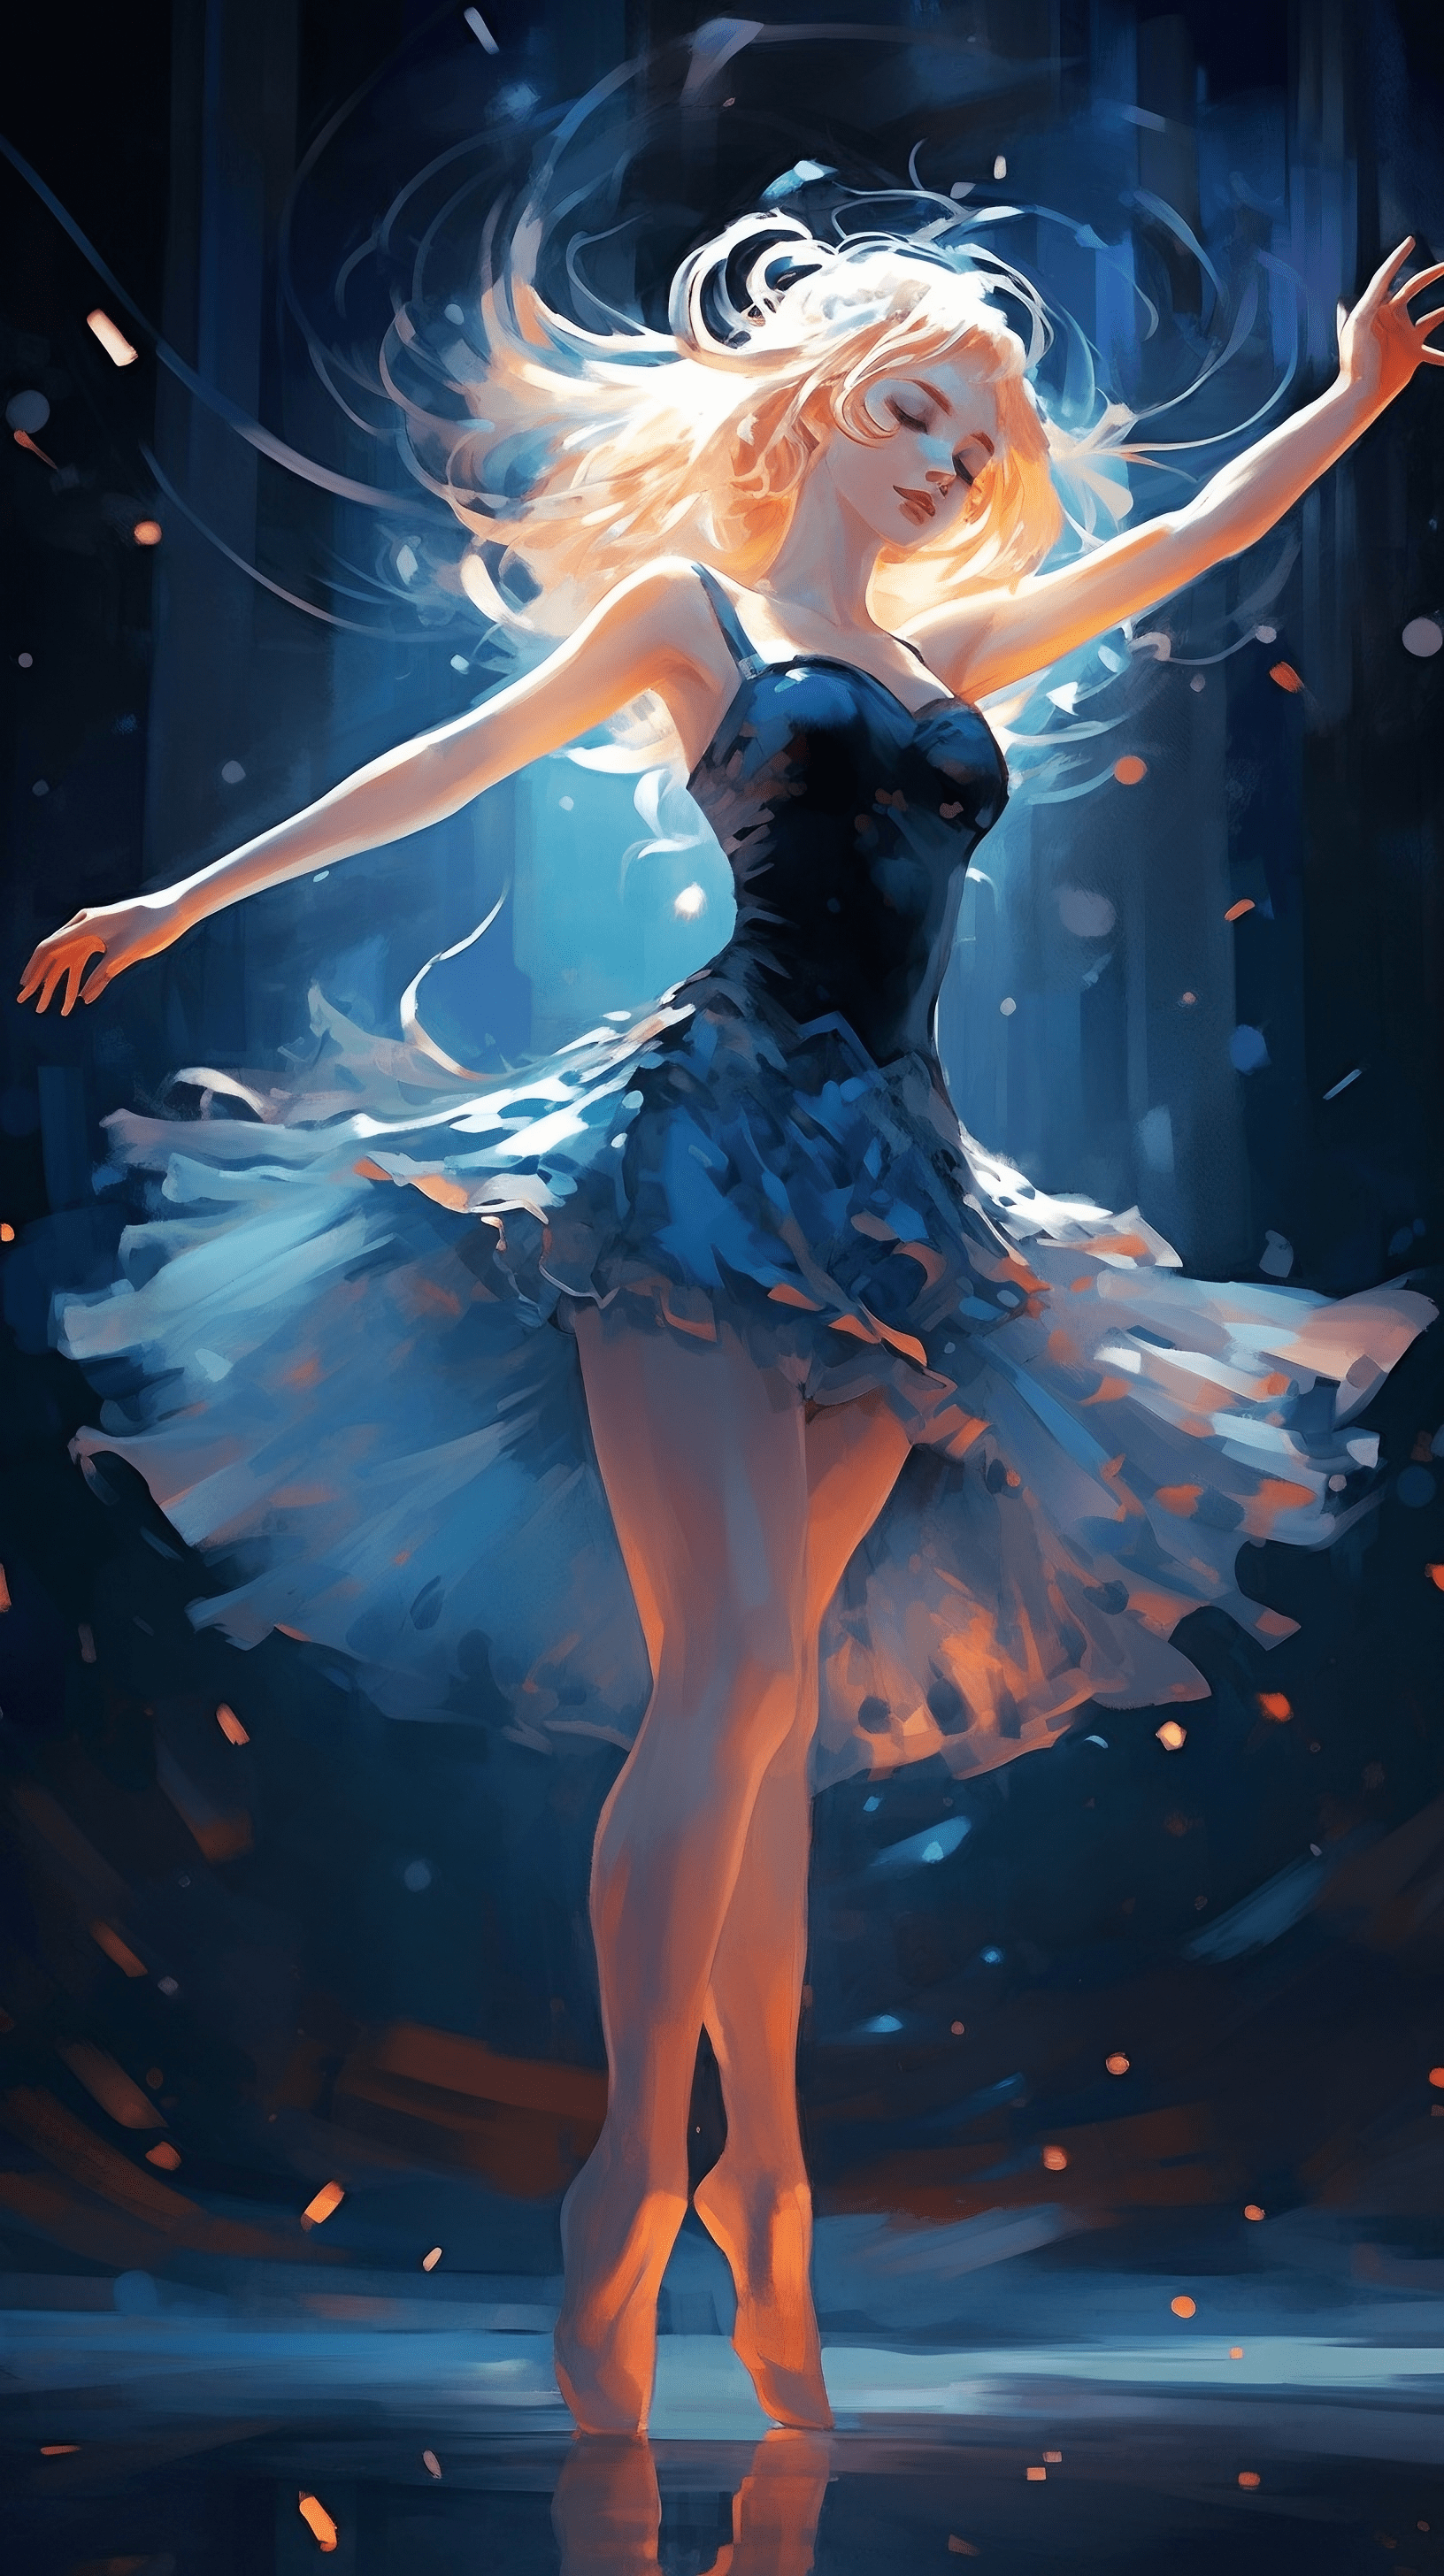 Anime ballet dancer